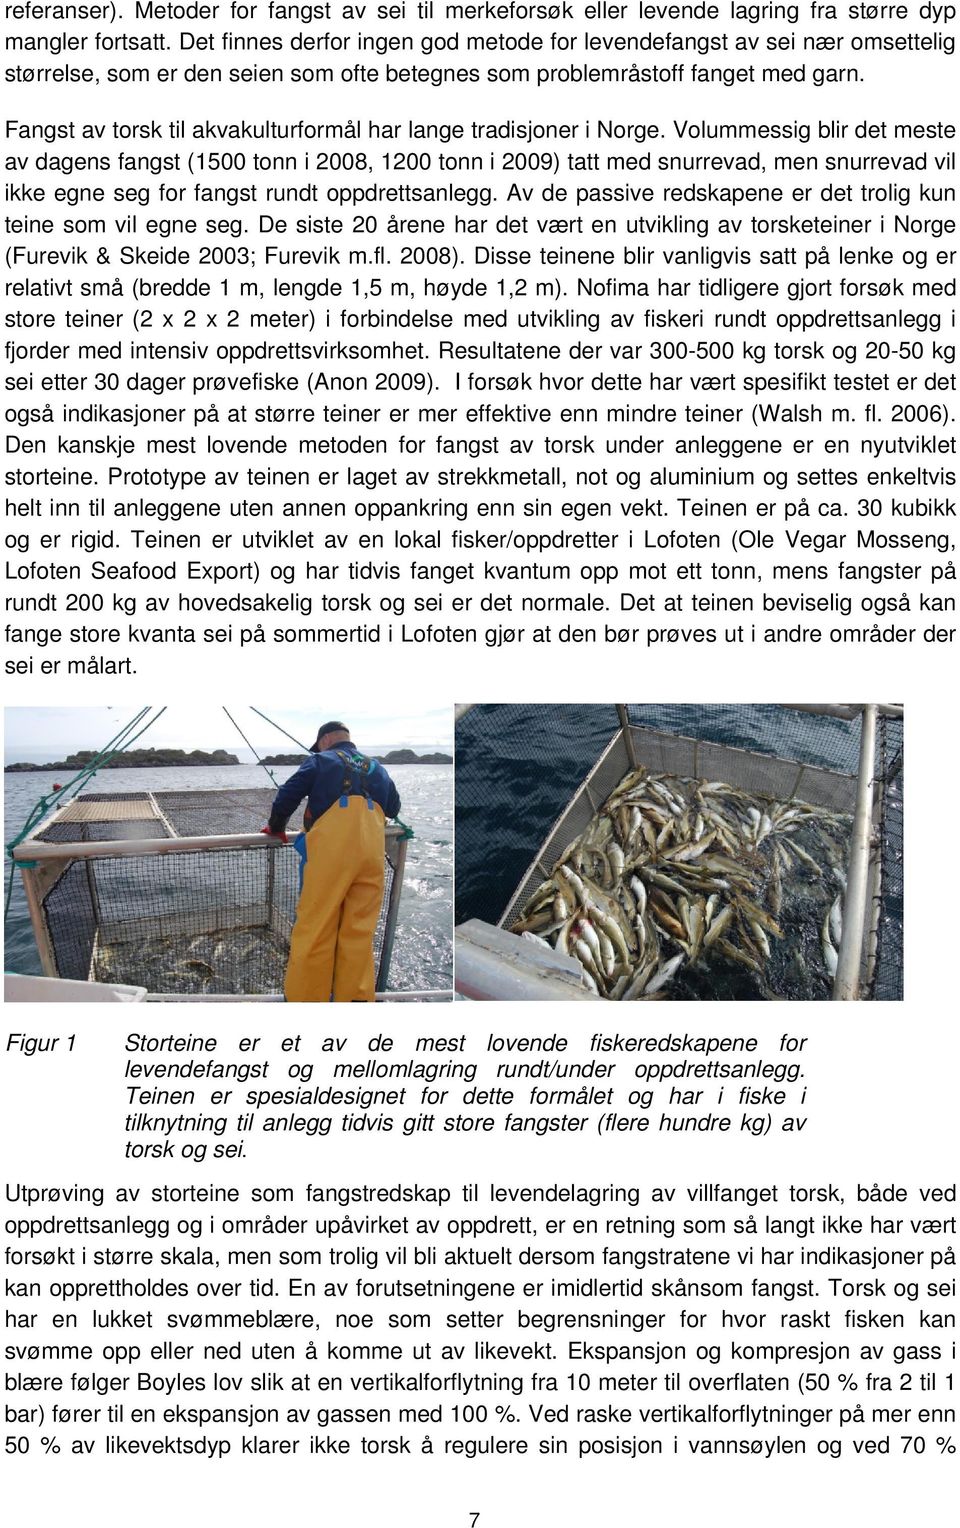 Fangst av torsk til akvakulturformål har lange tradisjoner i Norge.